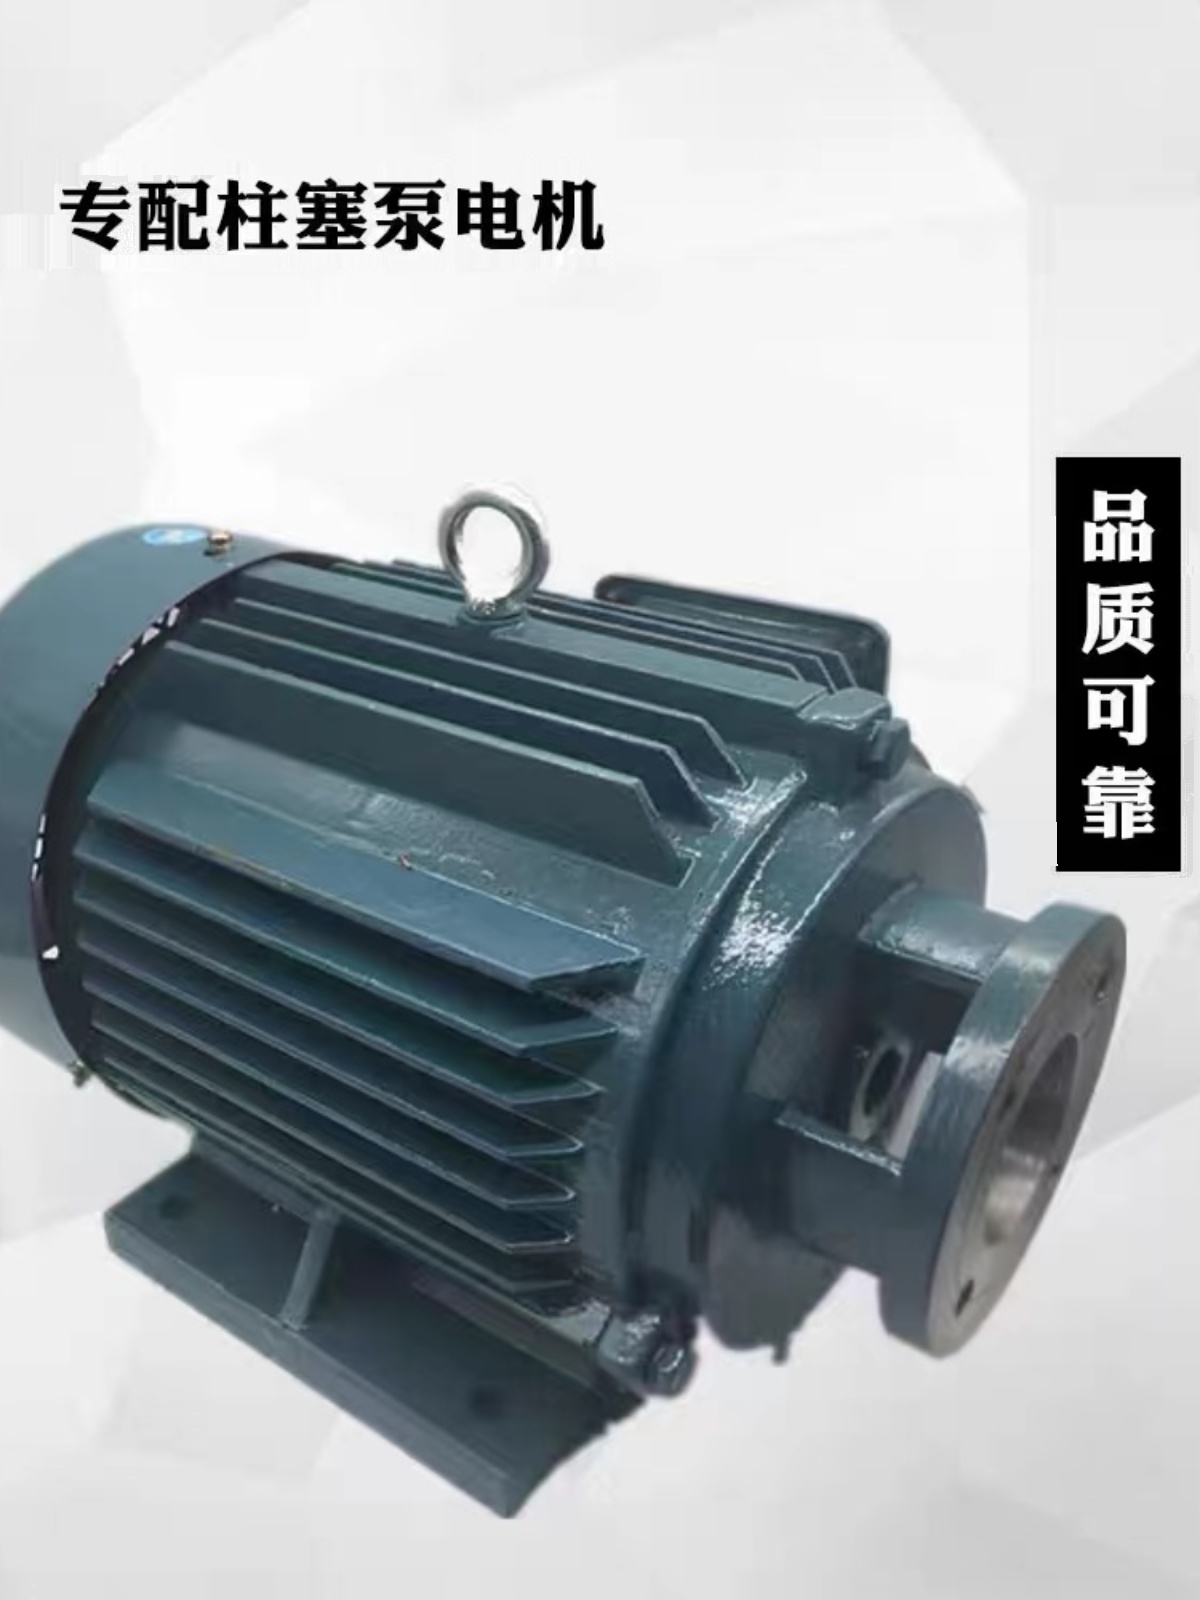 厂上海恒高液压设备102563100160YBH141B轴向柱塞泵自动变量泵销-封面